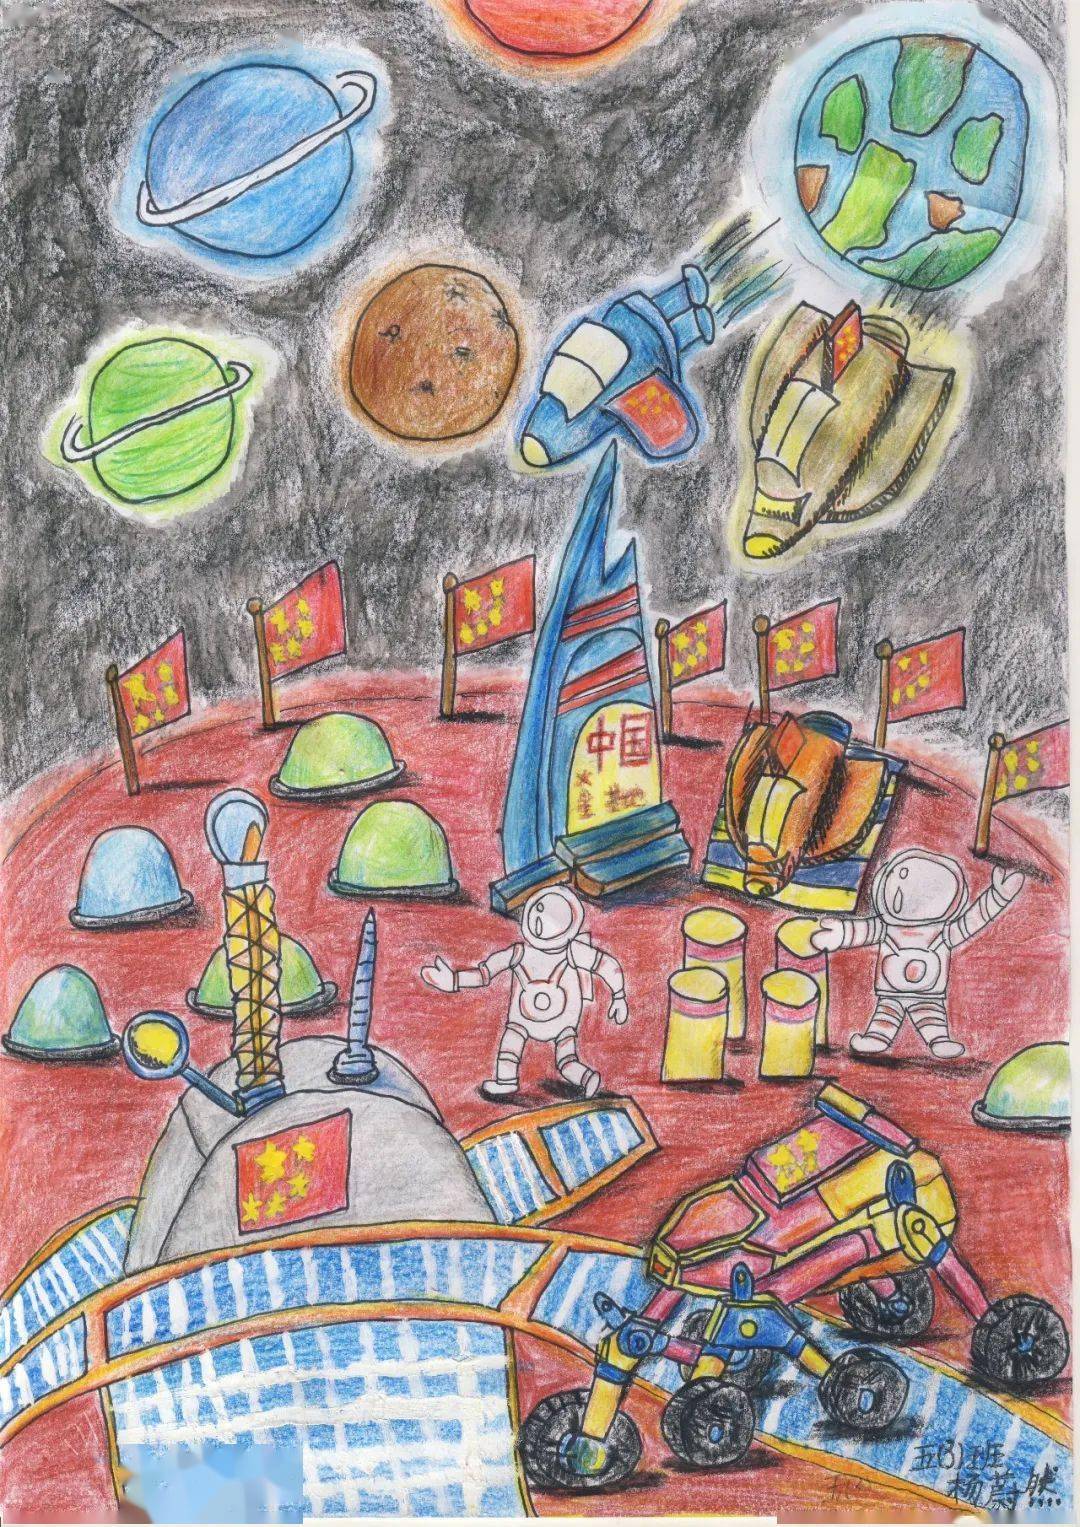 科技畅想未来 航天科幻画以火星探测为主题,学生们运用丰富的想象和